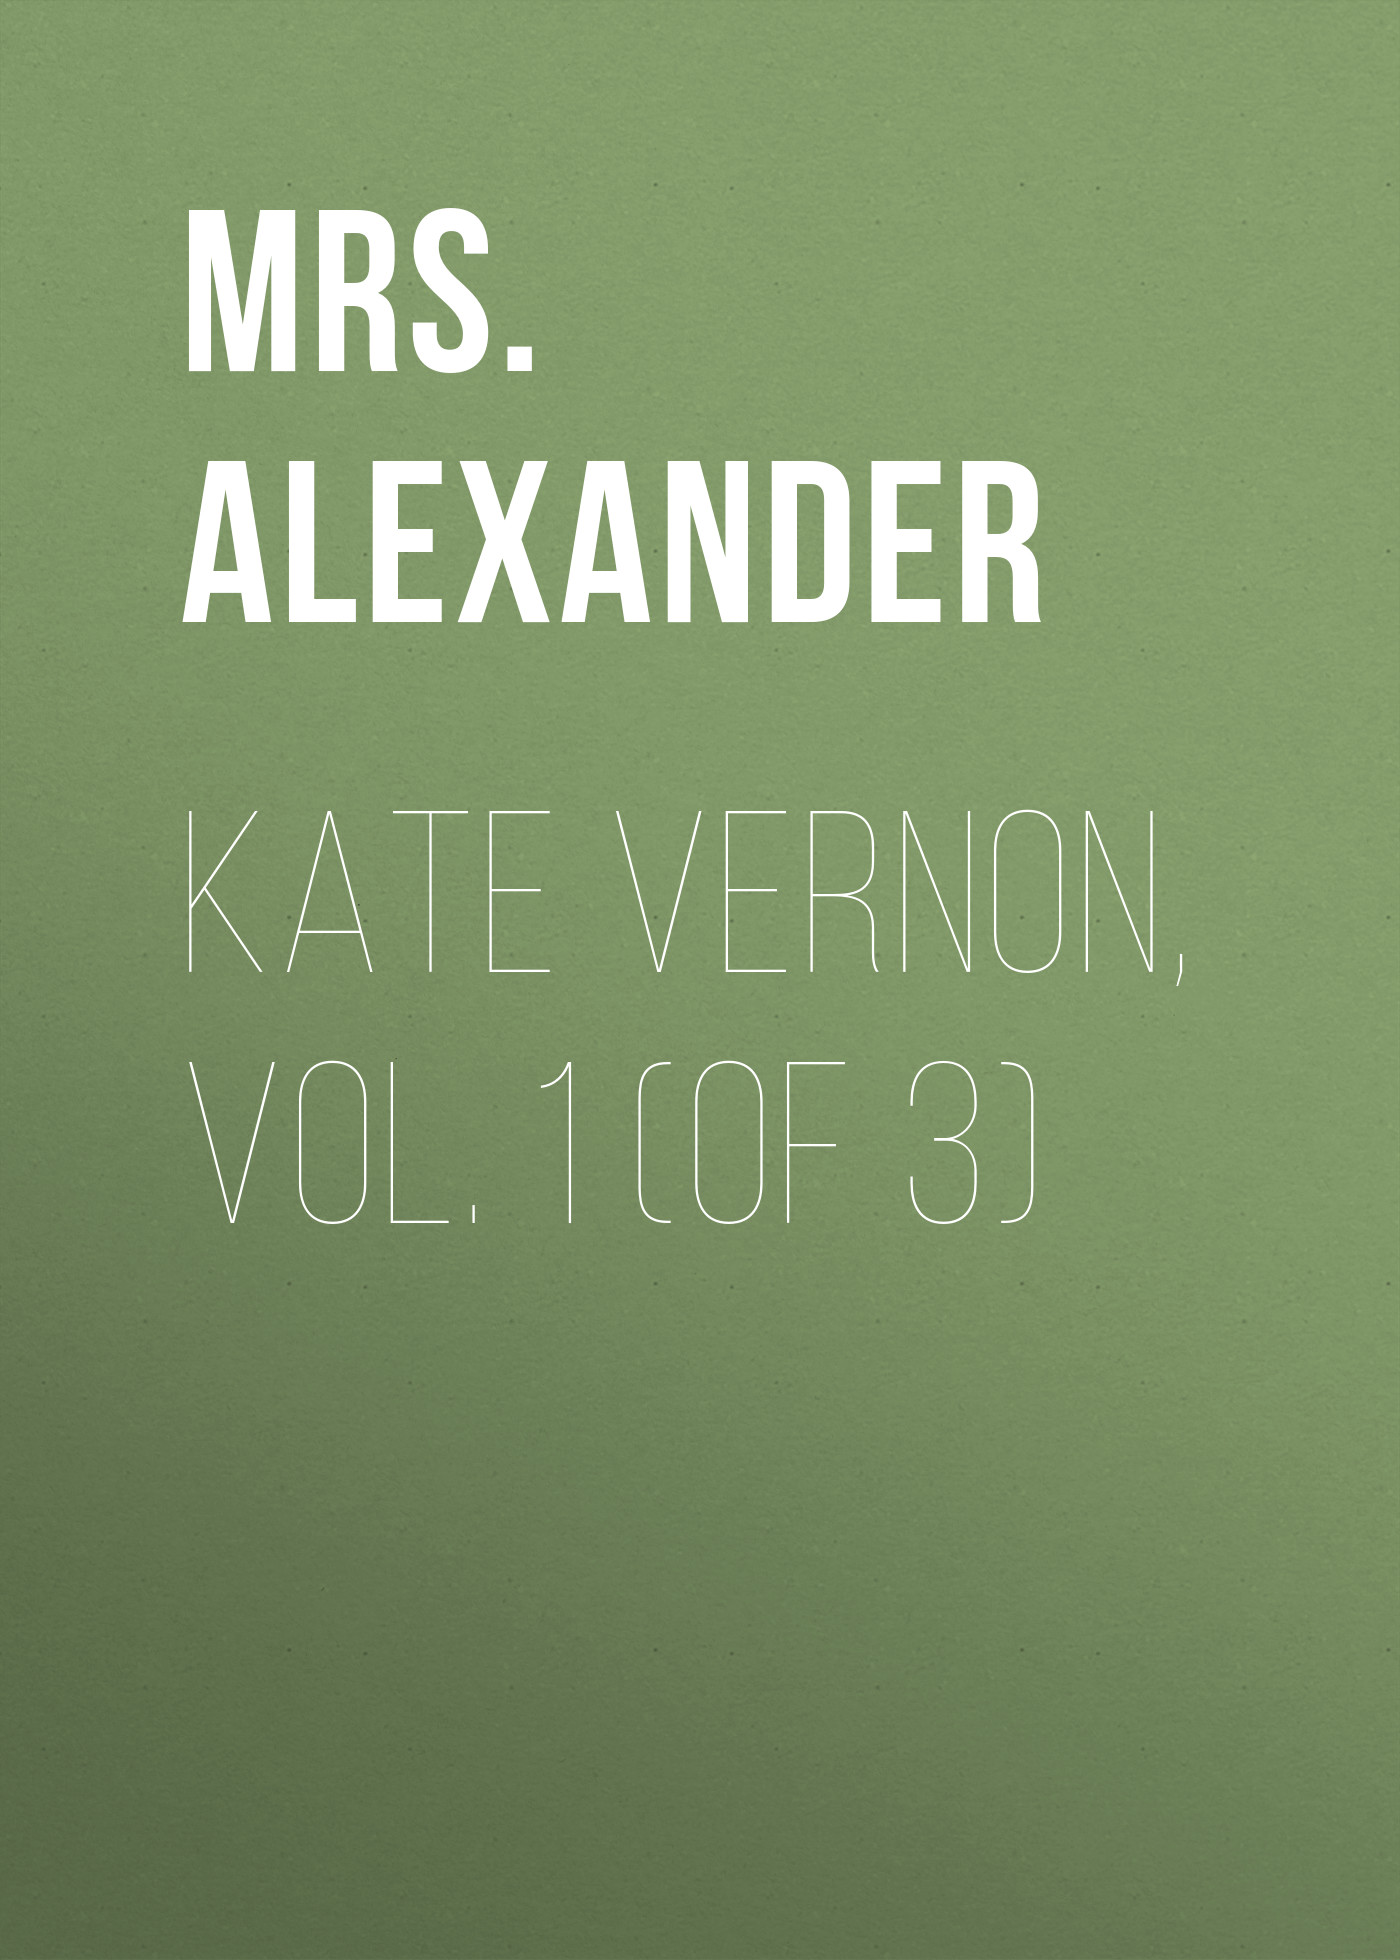 Книга Kate Vernon, Vol. 1 (of 3) из серии , созданная Mrs. Alexander, может относится к жанру Иностранные языки, Зарубежная старинная литература, Зарубежная классика. Стоимость электронной книги Kate Vernon, Vol. 1 (of 3) с идентификатором 24166604 составляет 0 руб.